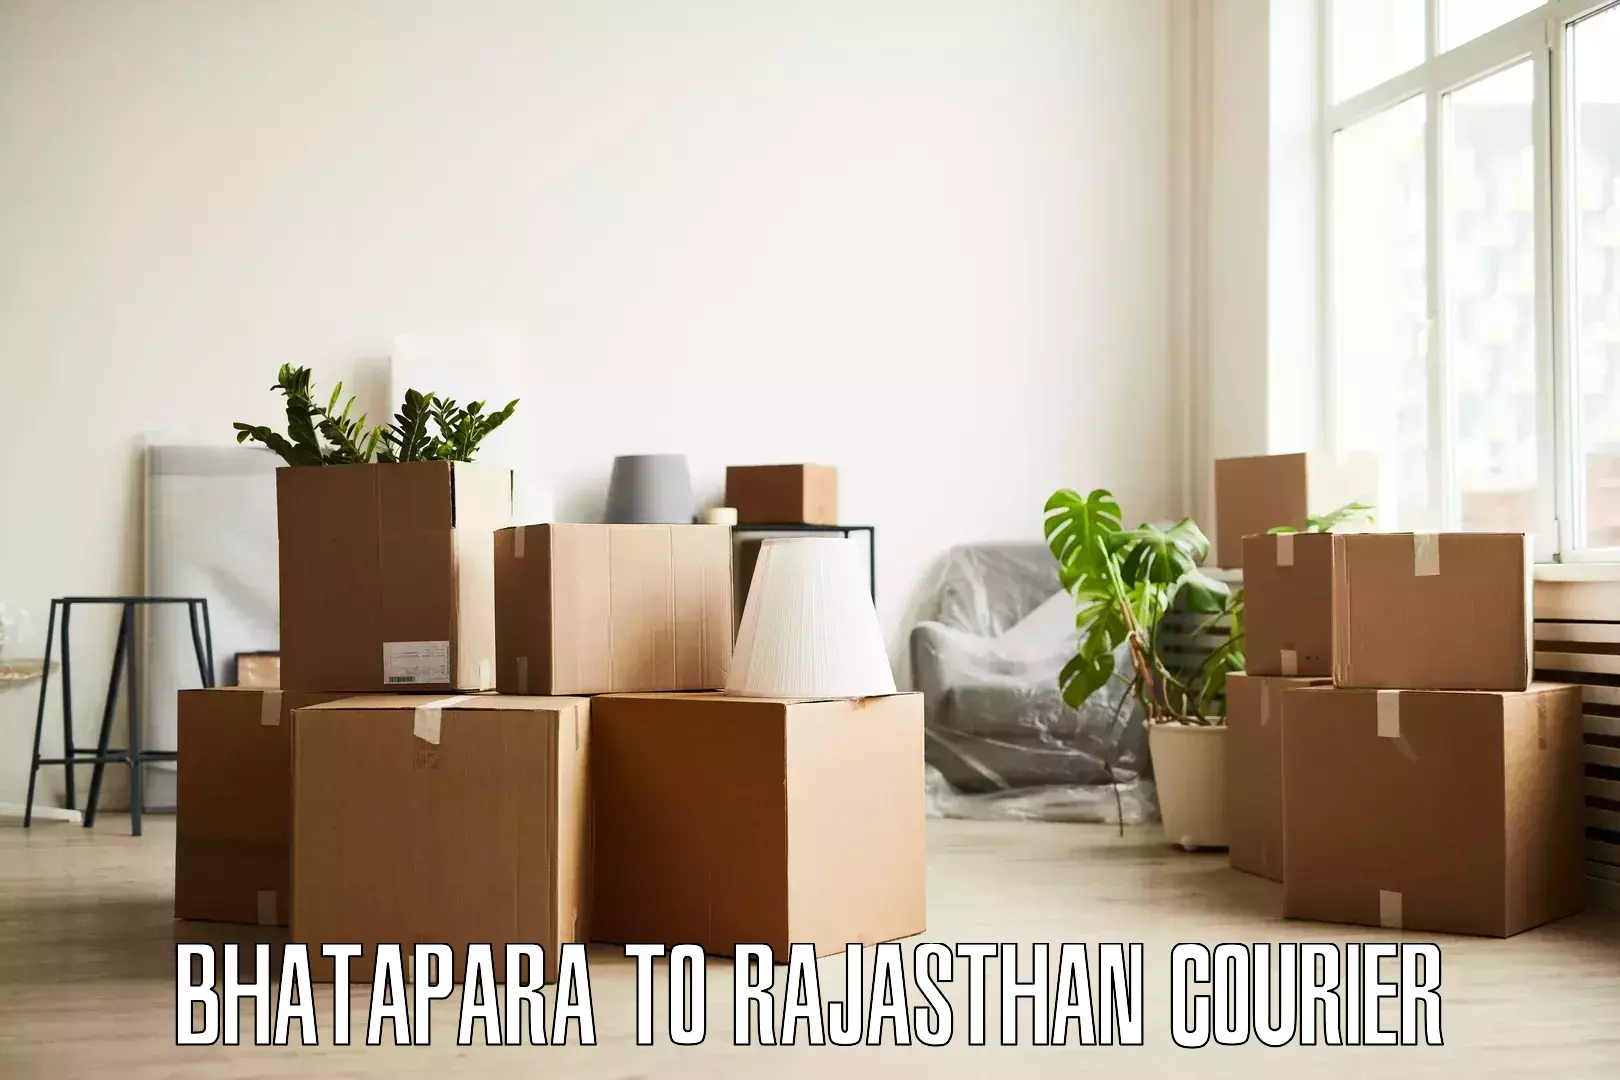 Residential furniture transport Bhatapara to Ghatol